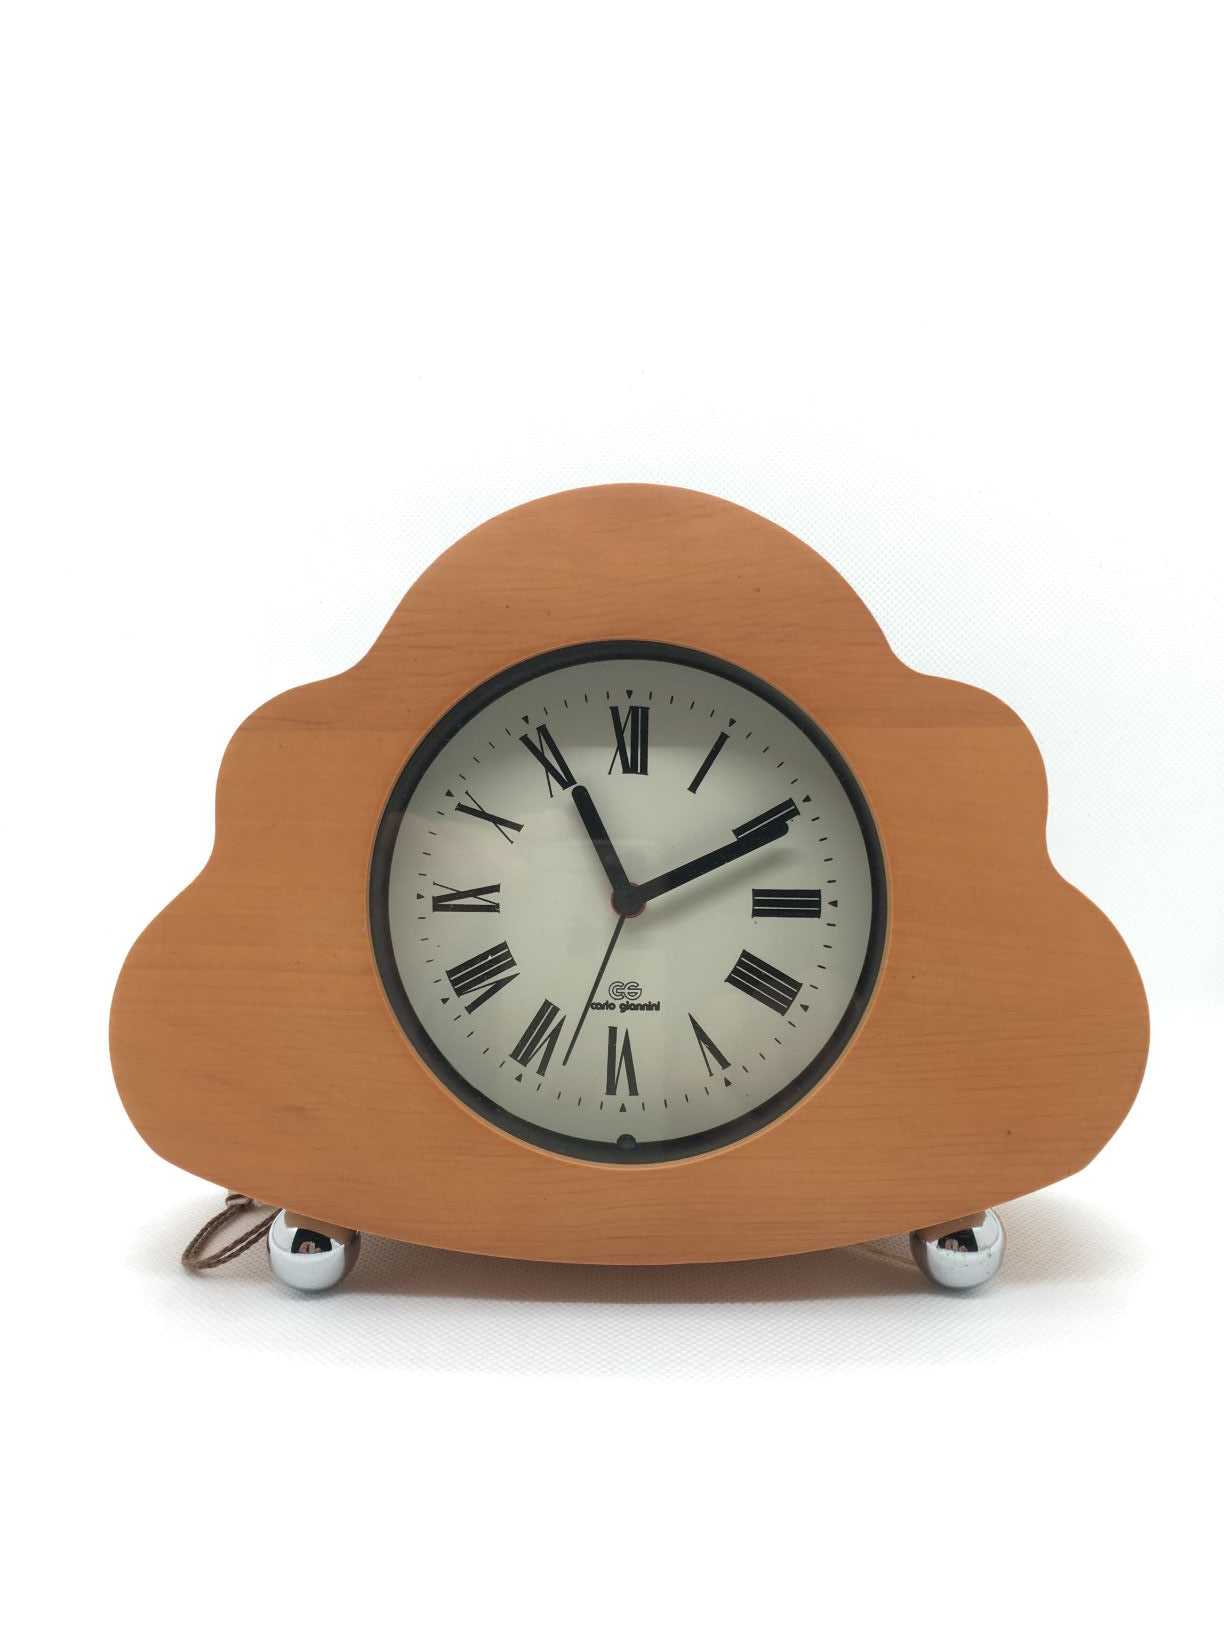 Orologio con sveglia da tavolo in legno. Dimensioni: cm 19 x 5,5 x 14,5 h Funzionamento a batteria (1 stilo inclusa)